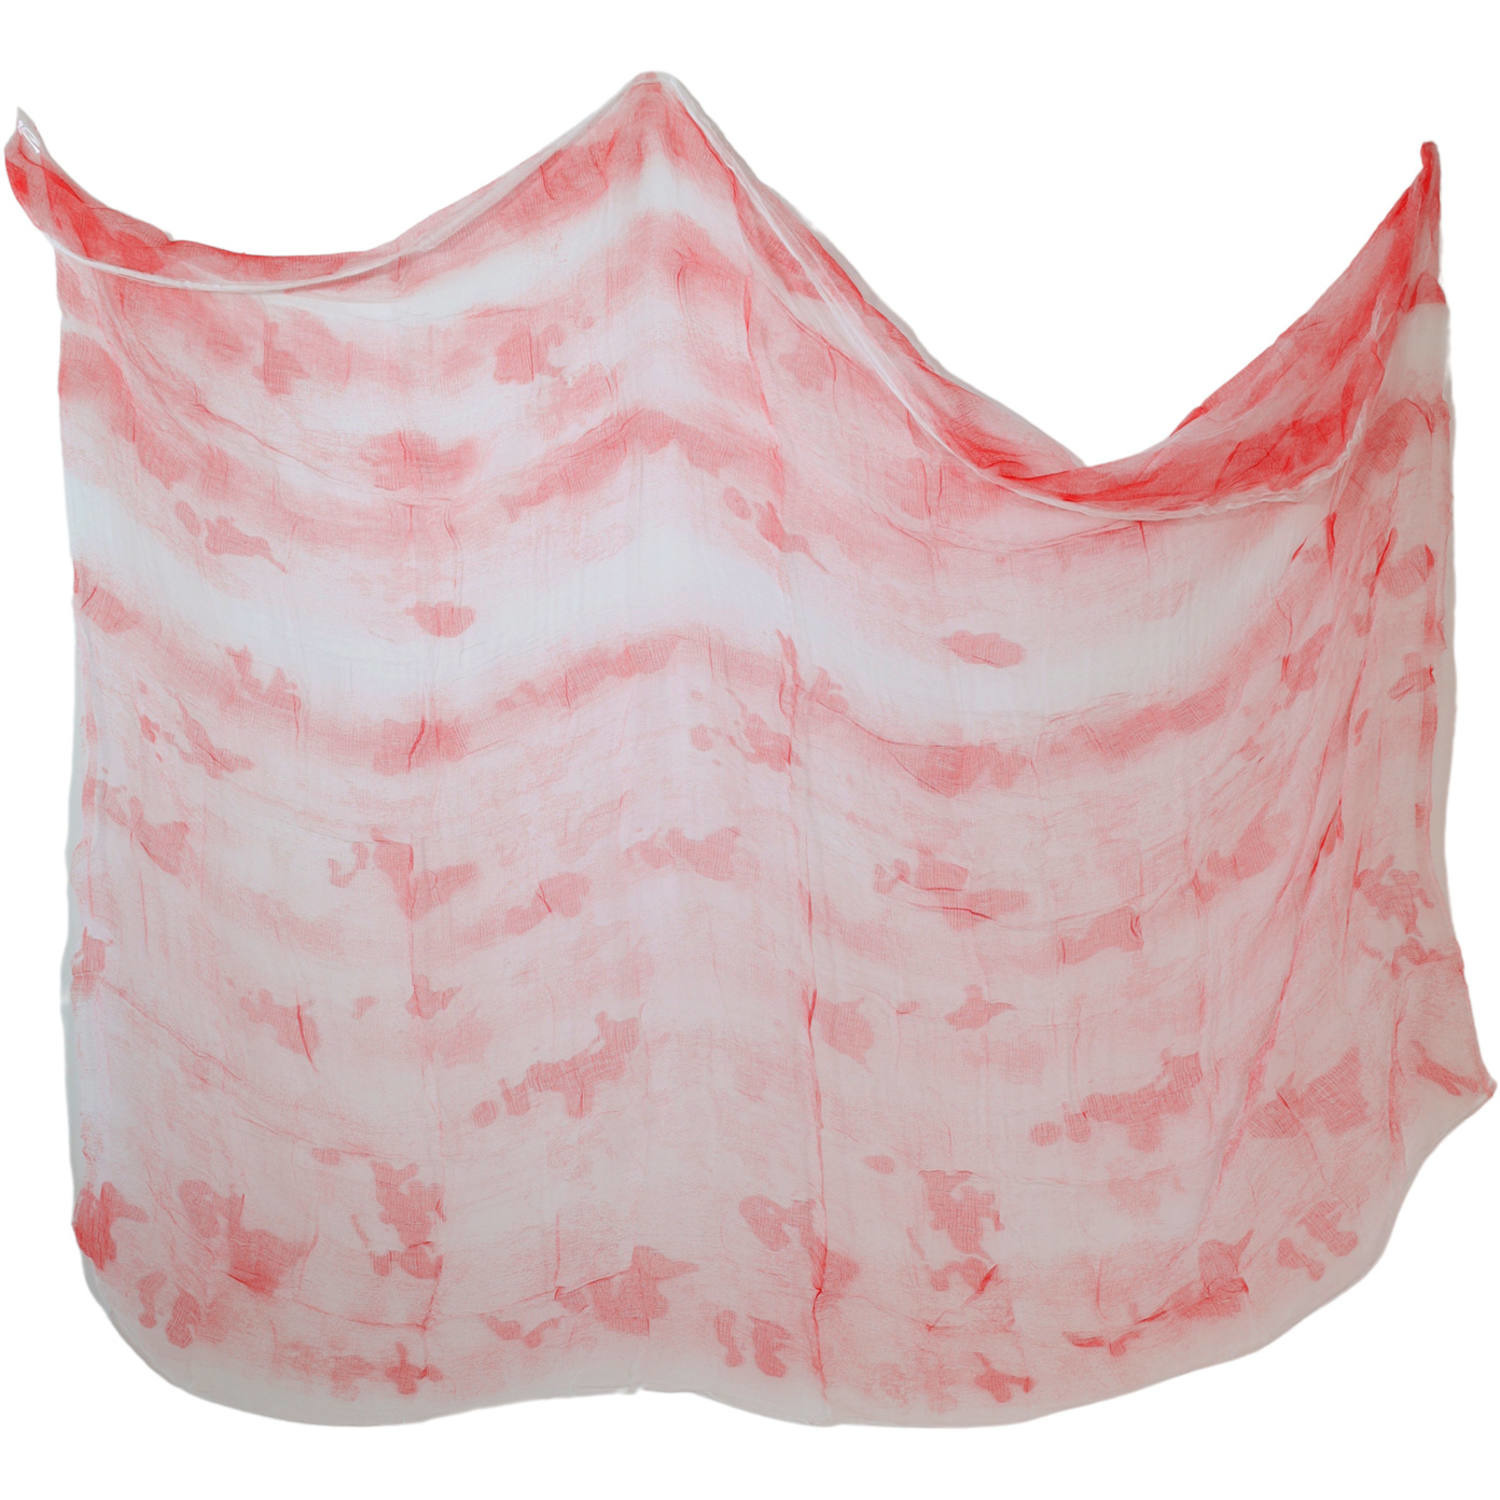 Decoratie laken-doek-kleed met bloed 200 x 250 cm